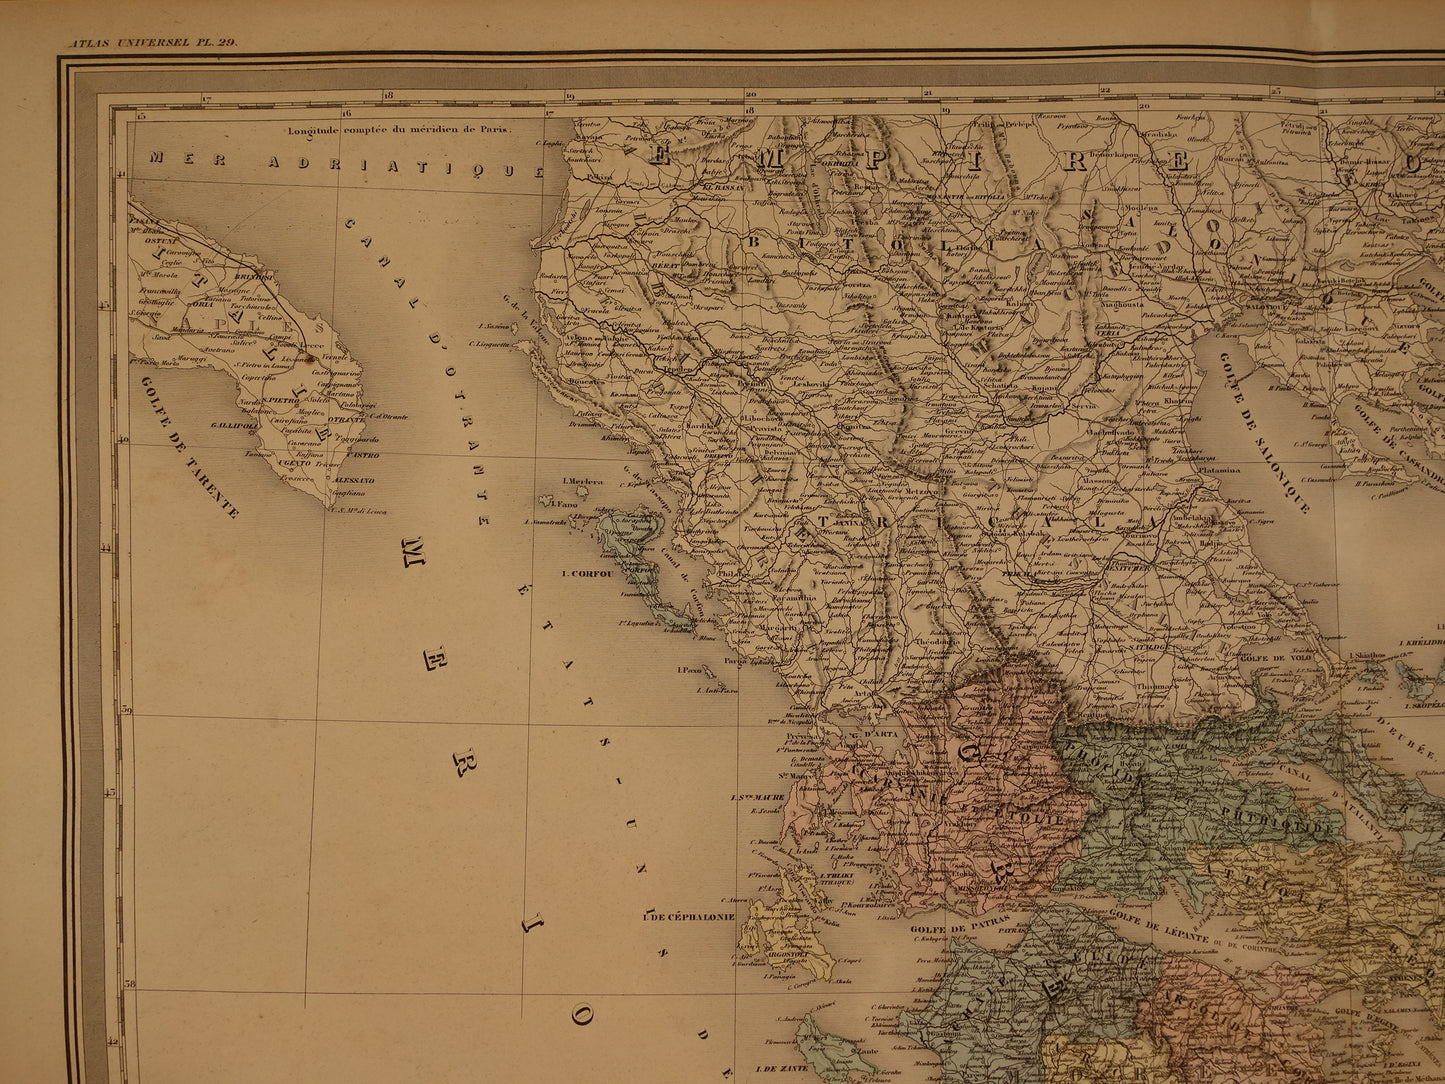 GRIEKENLAND grote oude landkaart van Griekenland 1880 Prachtige originele handgekleurde antieke kaart